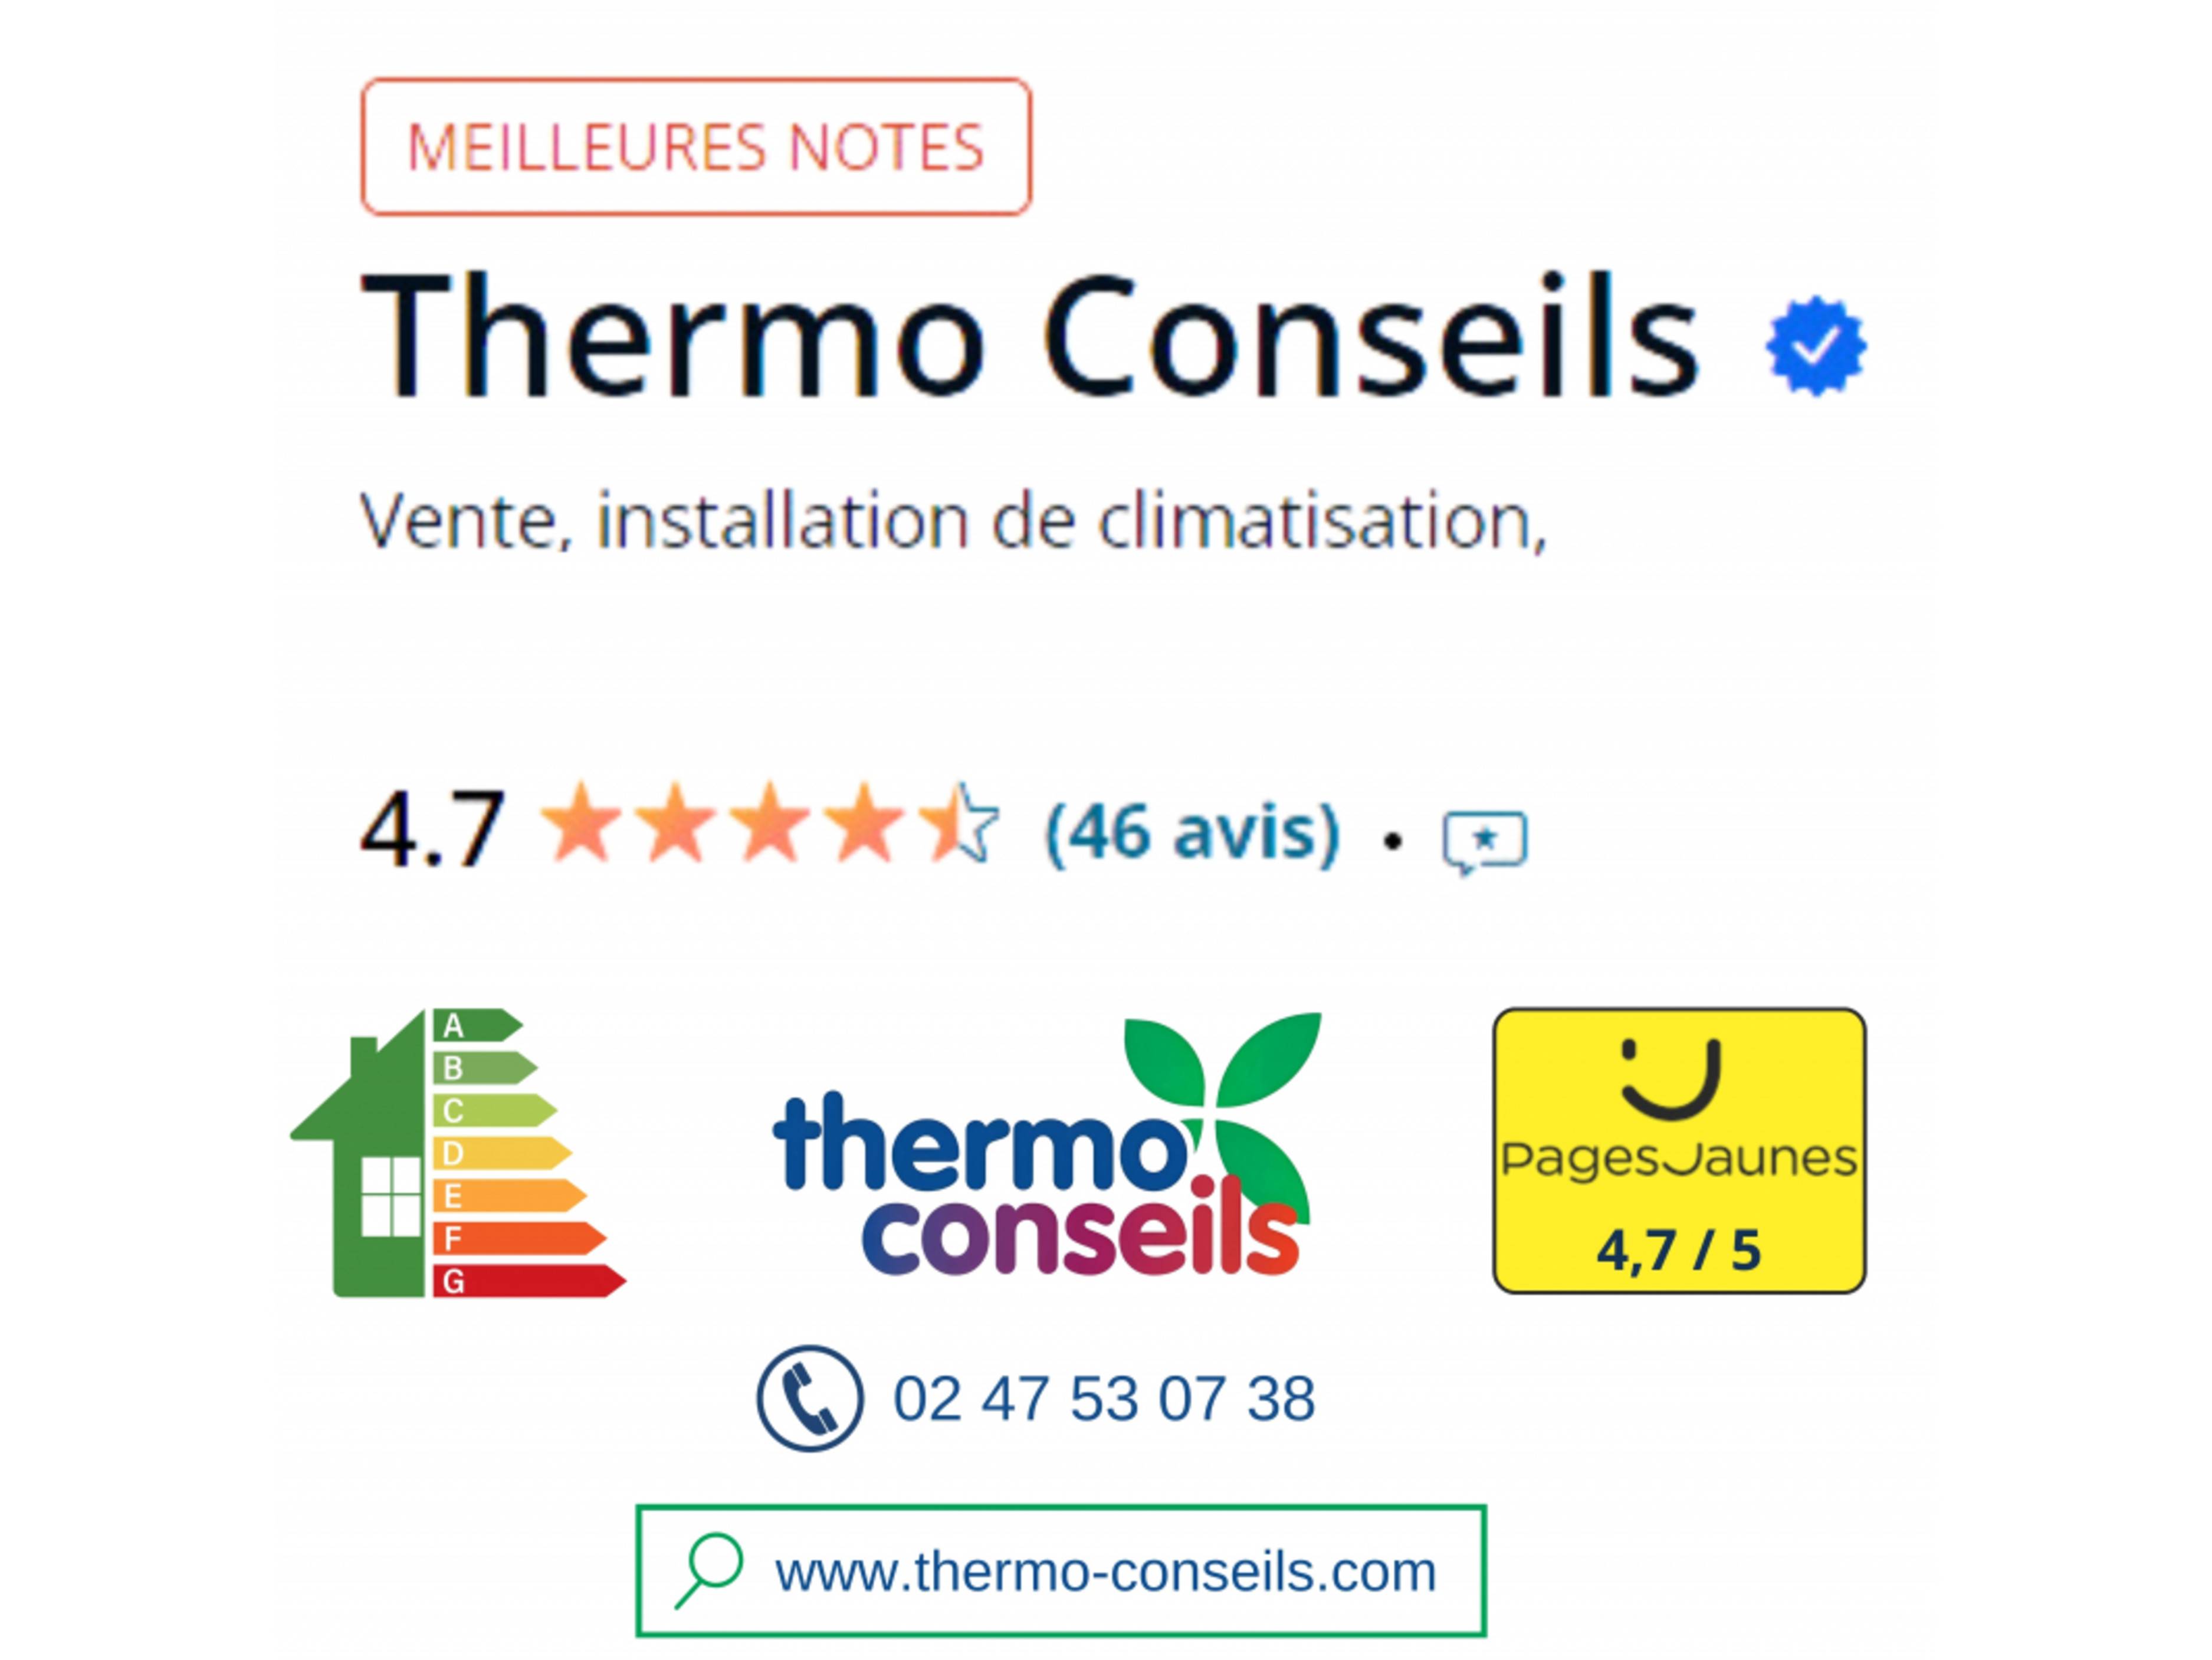 Avis client pages jaunes Thermo Conseils - pompe à chaleur - climatisation et chauffe-eau thermodynamique